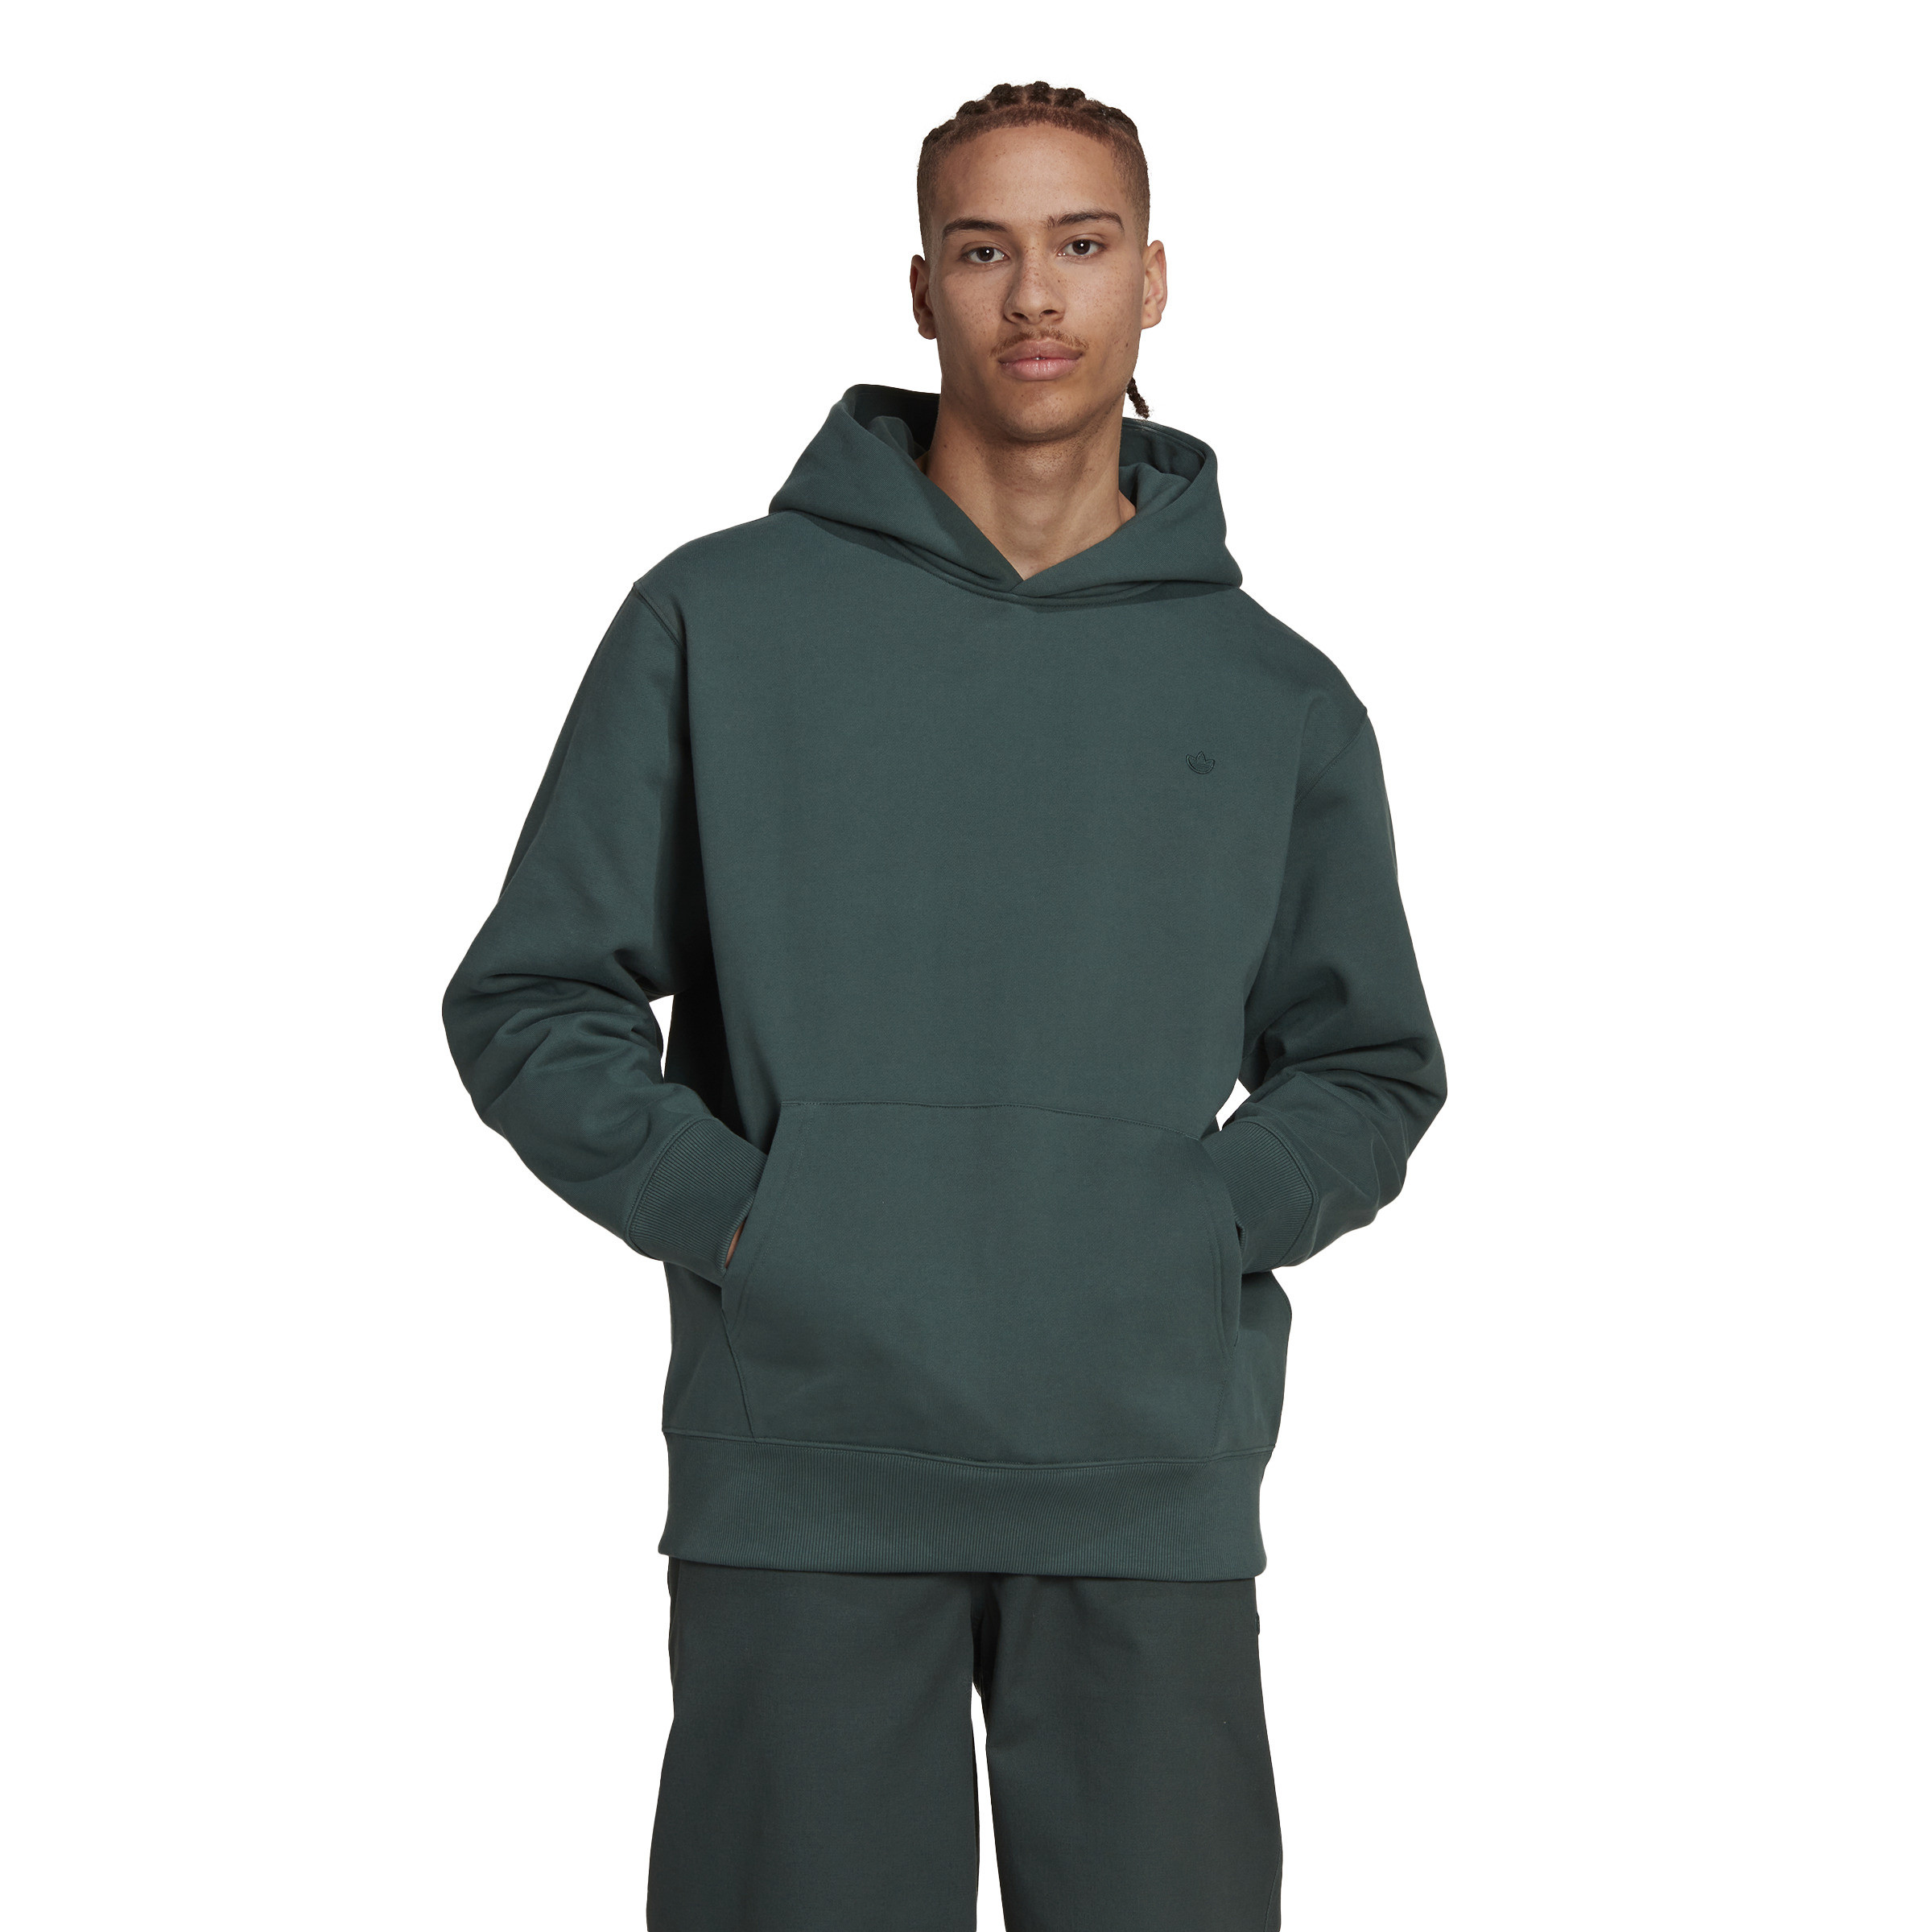 Adidas - Hooded sweatshirt adicolor, Dark Green, large image number 4